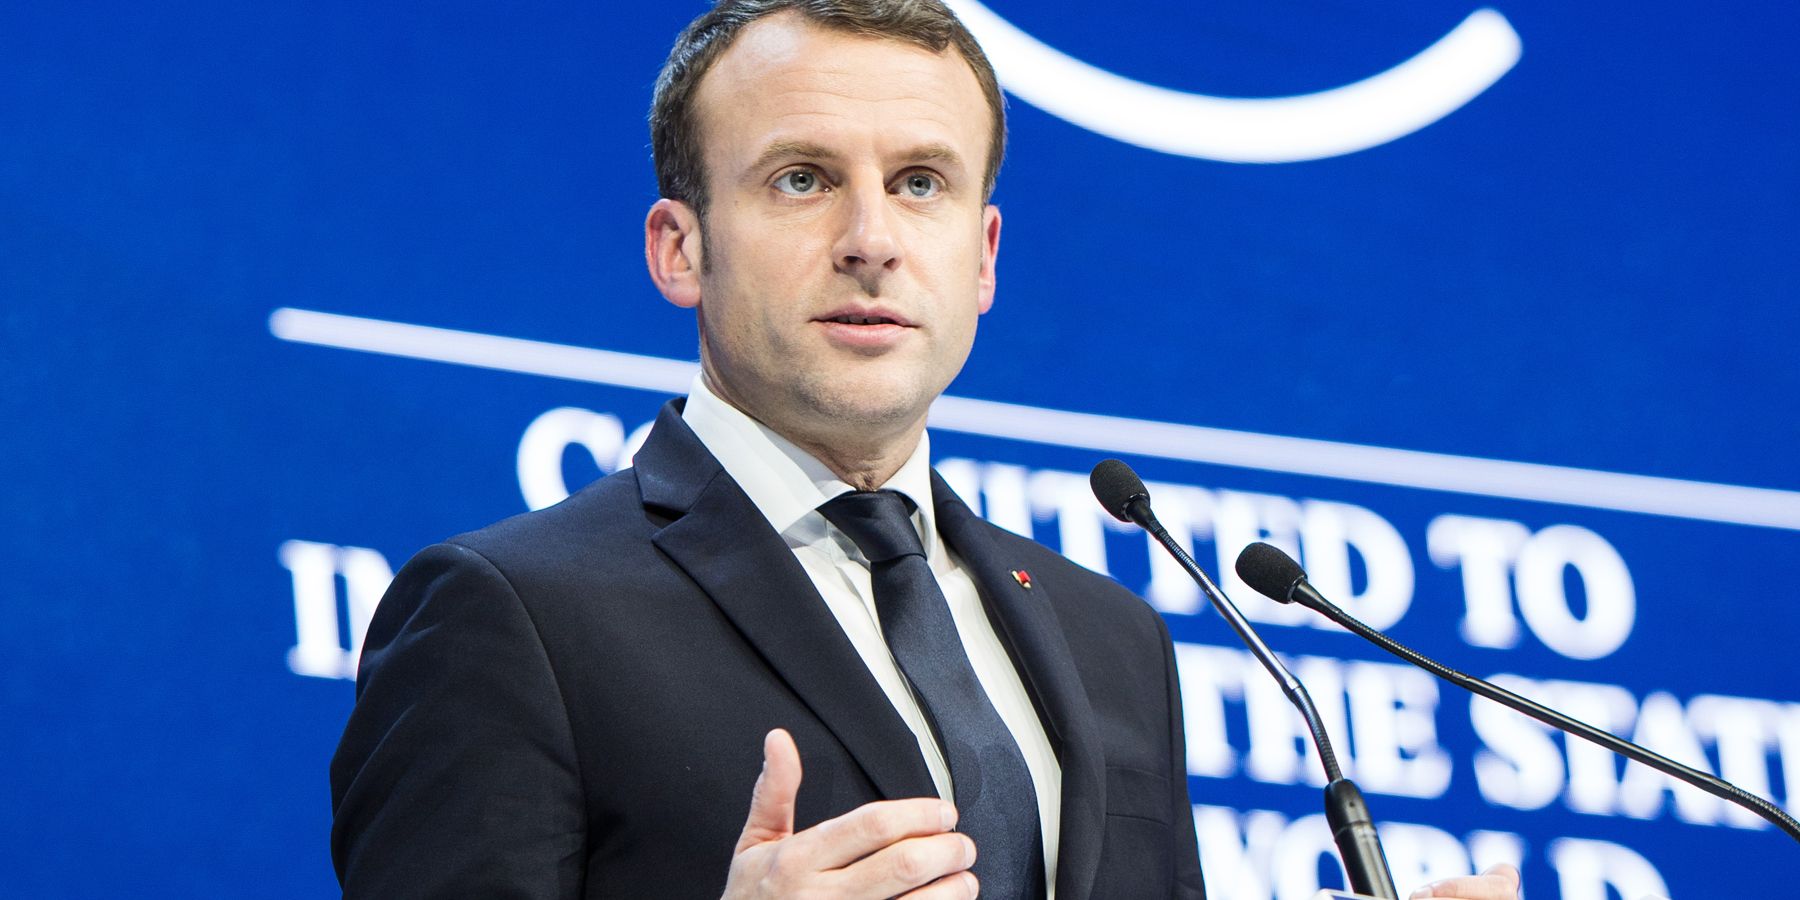 Emmanuel Macron in 2018